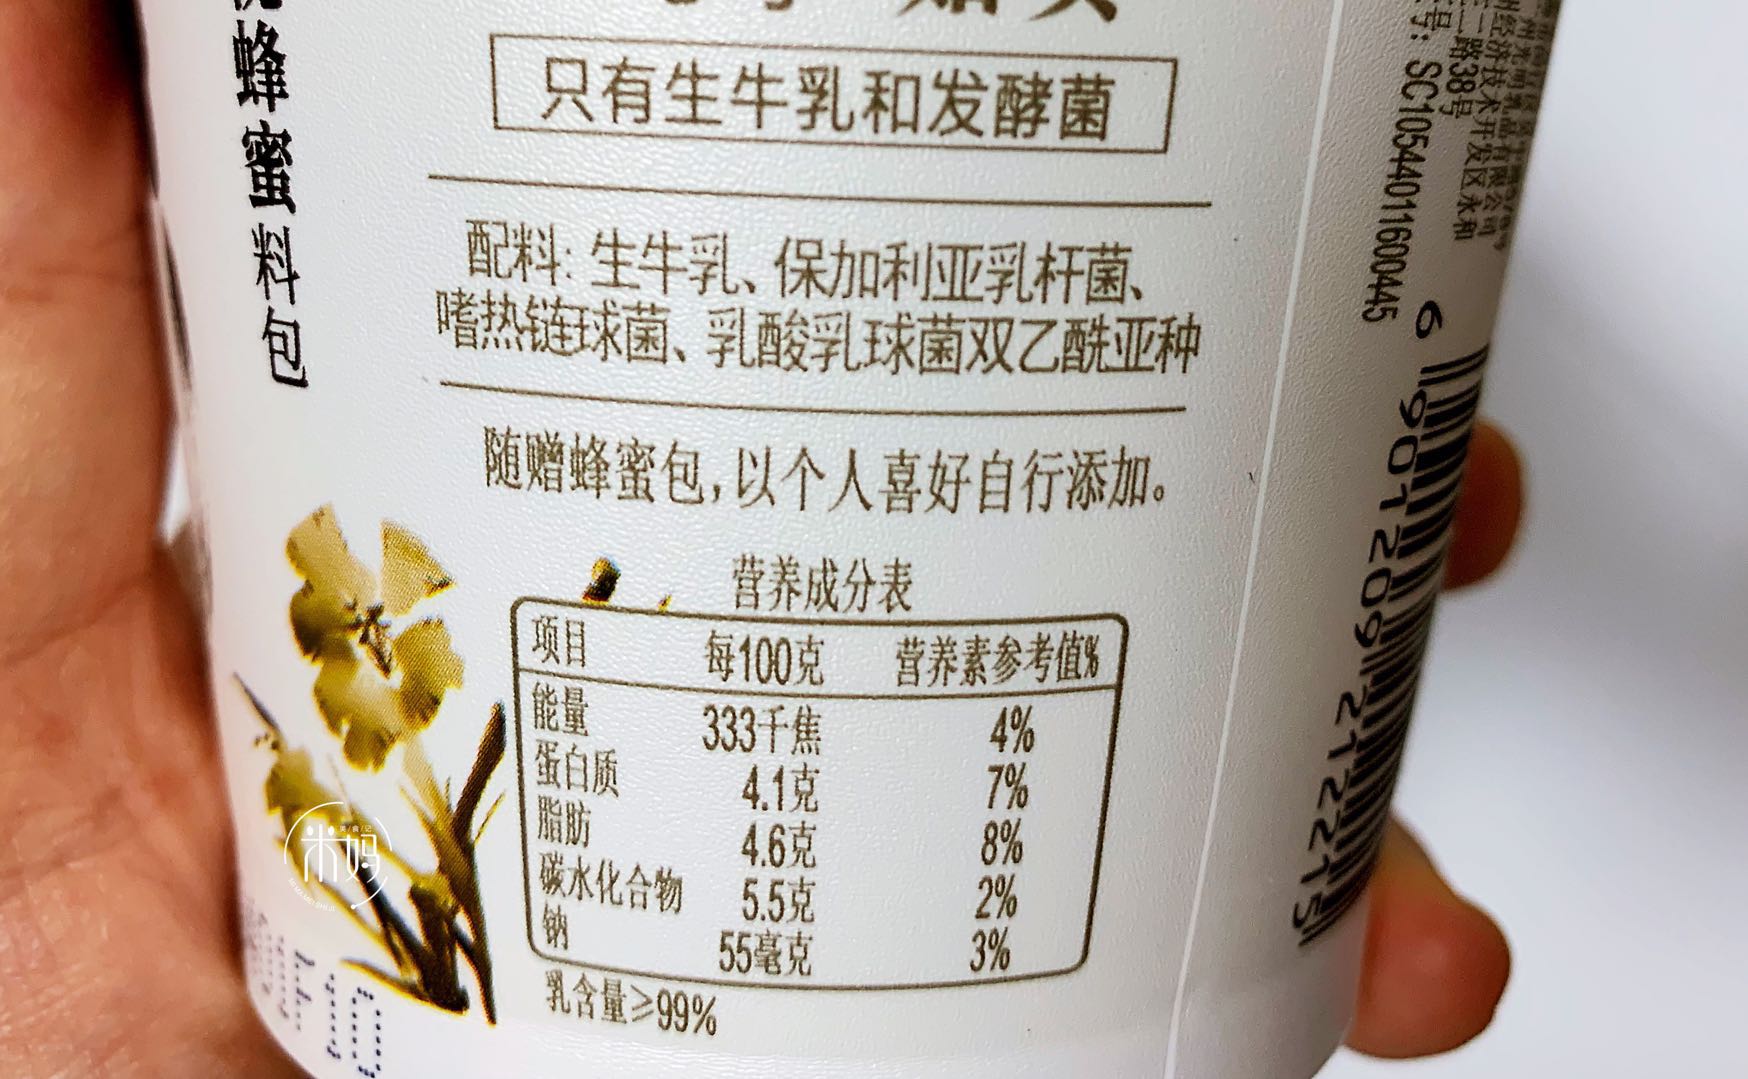 风味发酵乳,配料表里写着全脂乳粉的,这种是由奶粉制作而成的复原乳